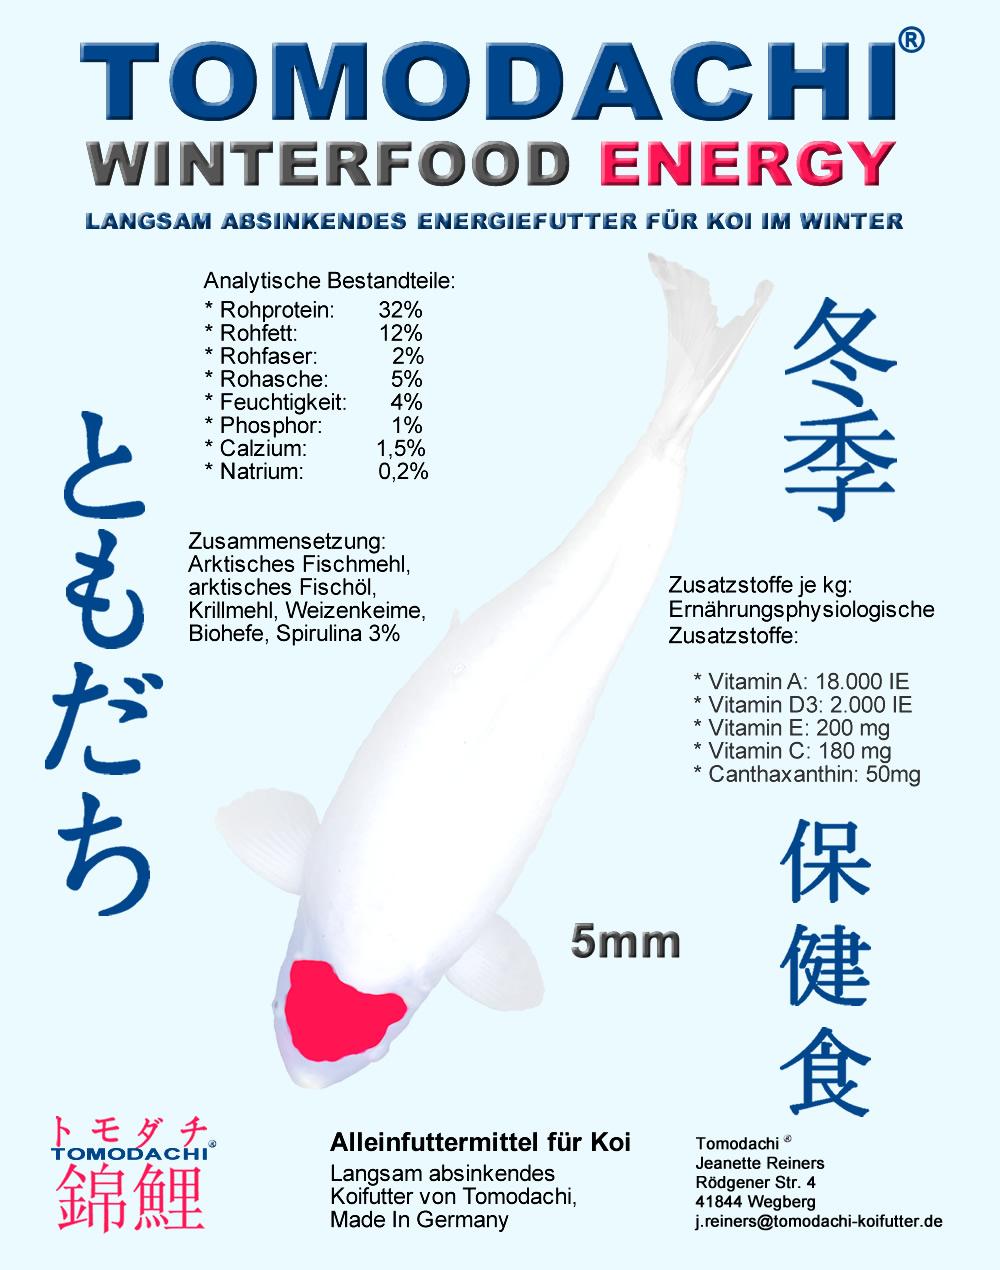 Tomodachi Winterfood Energy - Energie, Kraft und Vitalität für Koi im Winter, damit auch Ihre Koi den Winter vital und fit überstehen.